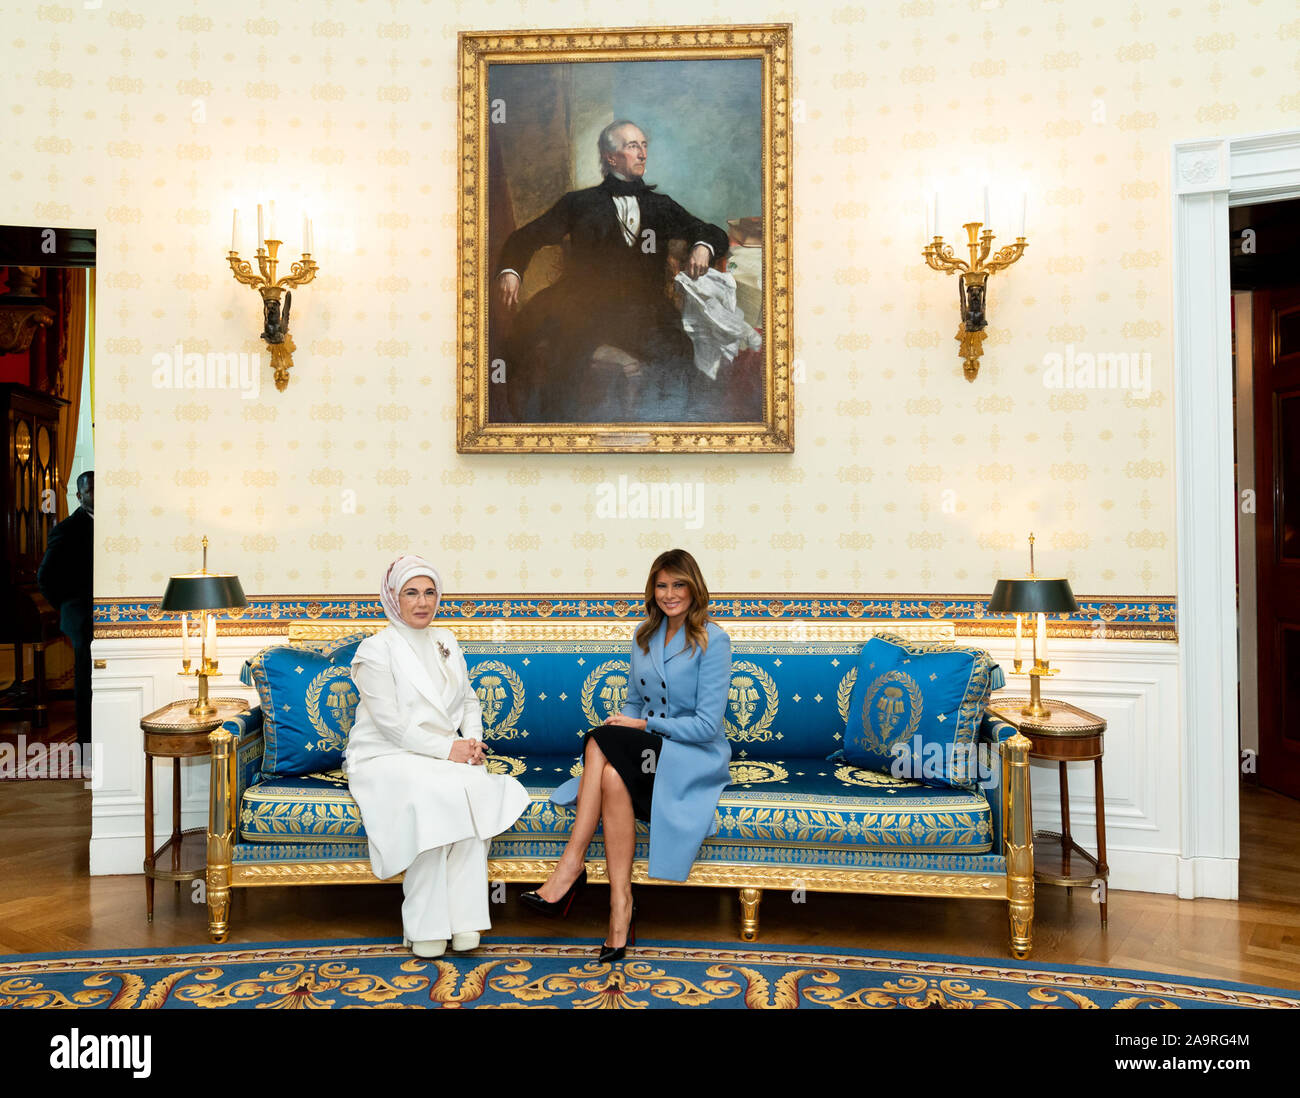 Première Dame Melania Trump pose pour une photo avec Mme Emine Erdogan, l'épouse du Président turc, Recep Tayyip Erdogan Mercredi, Novembre 13, 2019, dans la salle bleue de la Maison Blanche. Banque D'Images